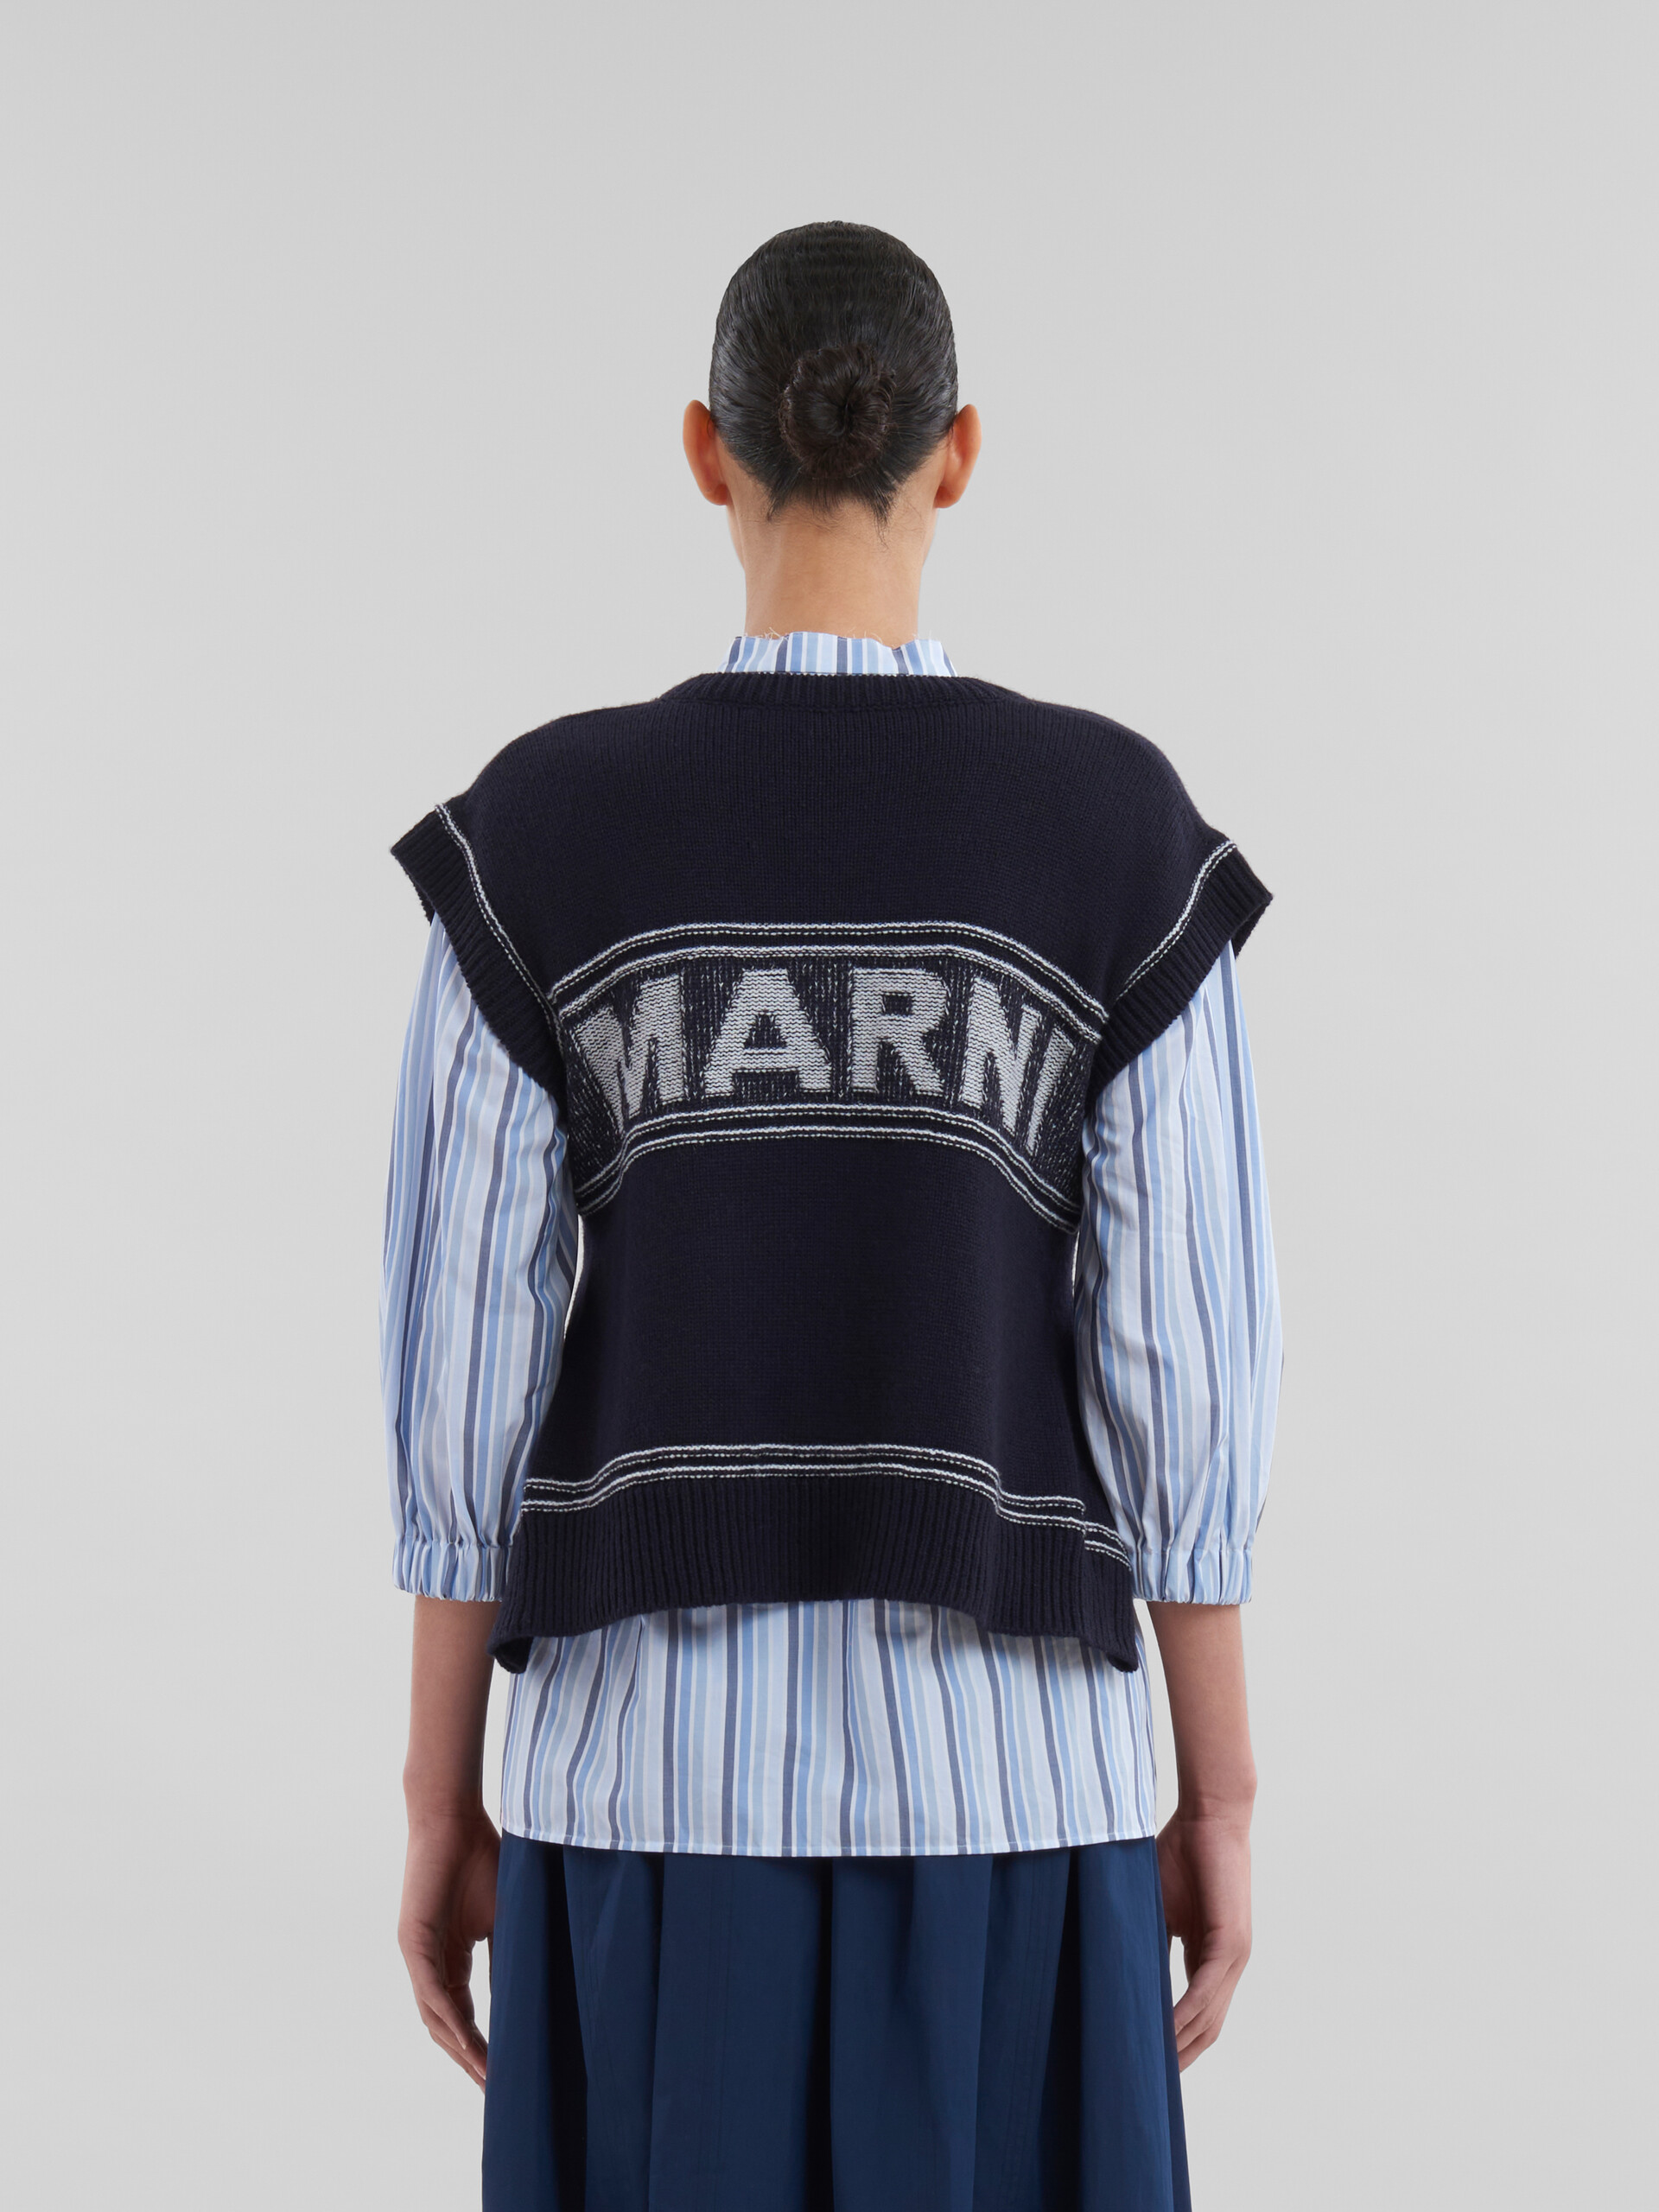 Marineblaue Weste aus Schurwolle mit Marni-Intarsien - Pullover - Image 3